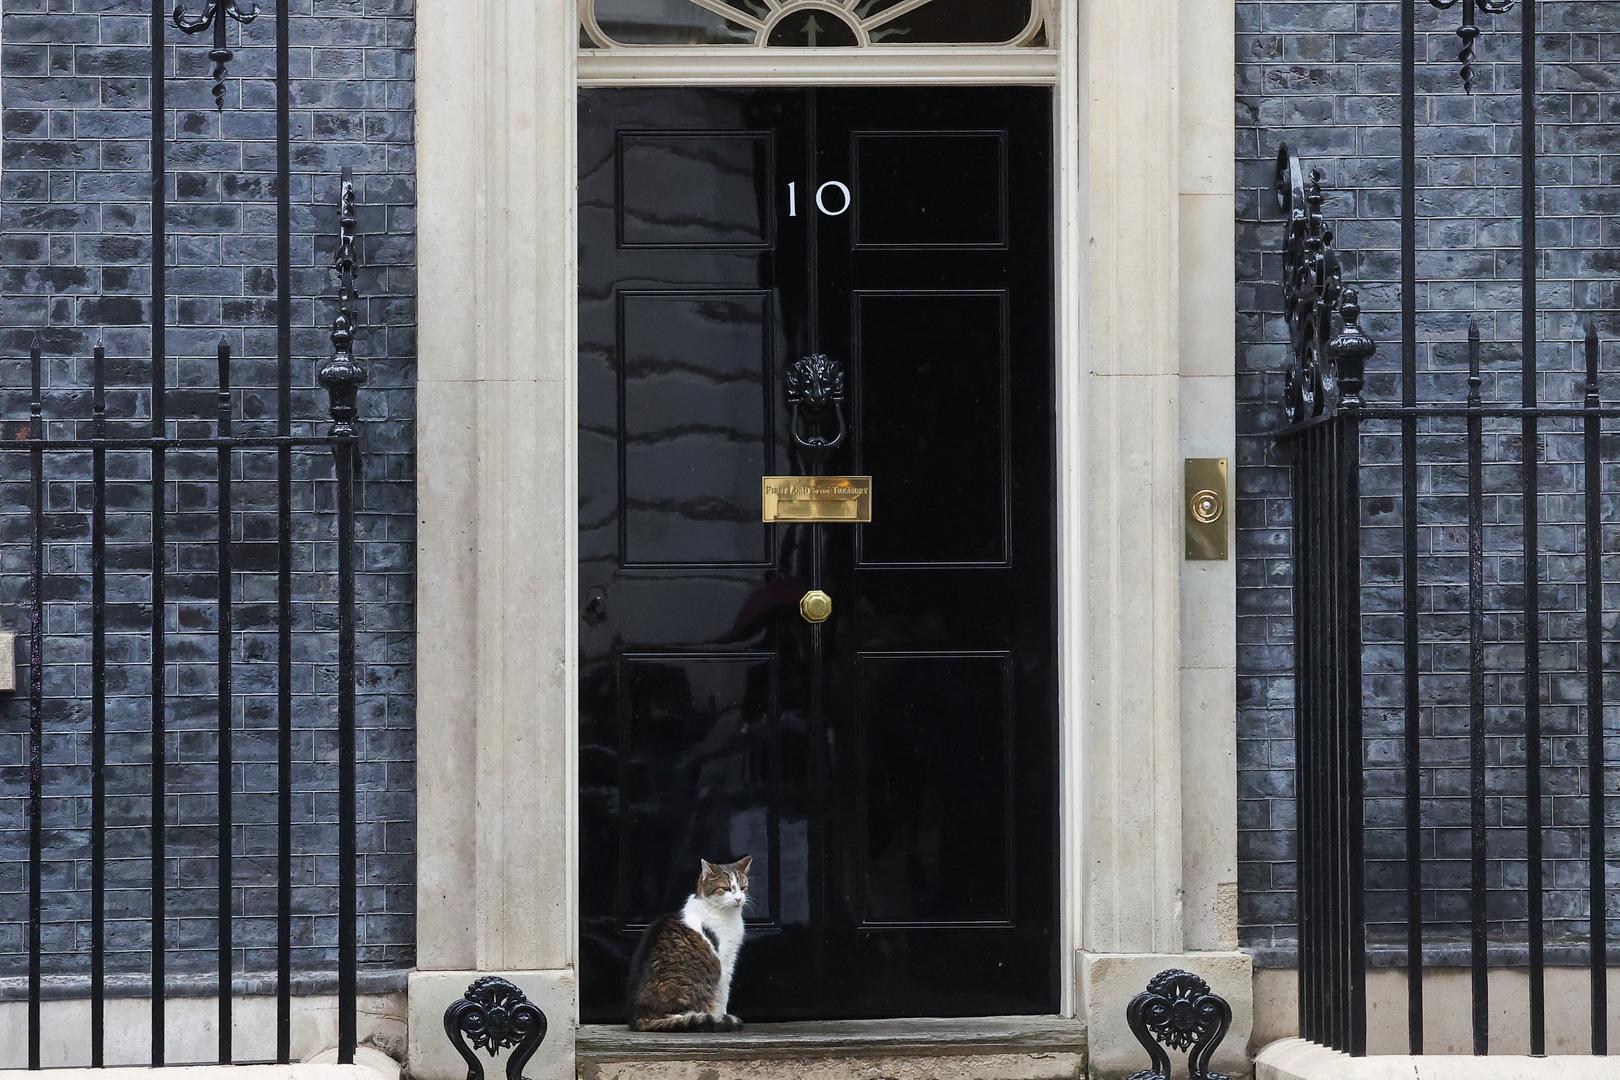 U proteklih 14 godina političkih previranja u Ujedinjenom Kraljevstvu postojala je jedna figura stabilnosti - Larry, mačak iz Downing Streeta. Sada, s općim izborima 4. srpnja koji se brzo približavaju, ostarjeli mačak mogao bi dočekati svojeg šestog premijera. Već je imao pet konzervativnih premijera, a ako su ankete točne, uskoro će dobiti svojeg prvog iz Laburističke stranke.